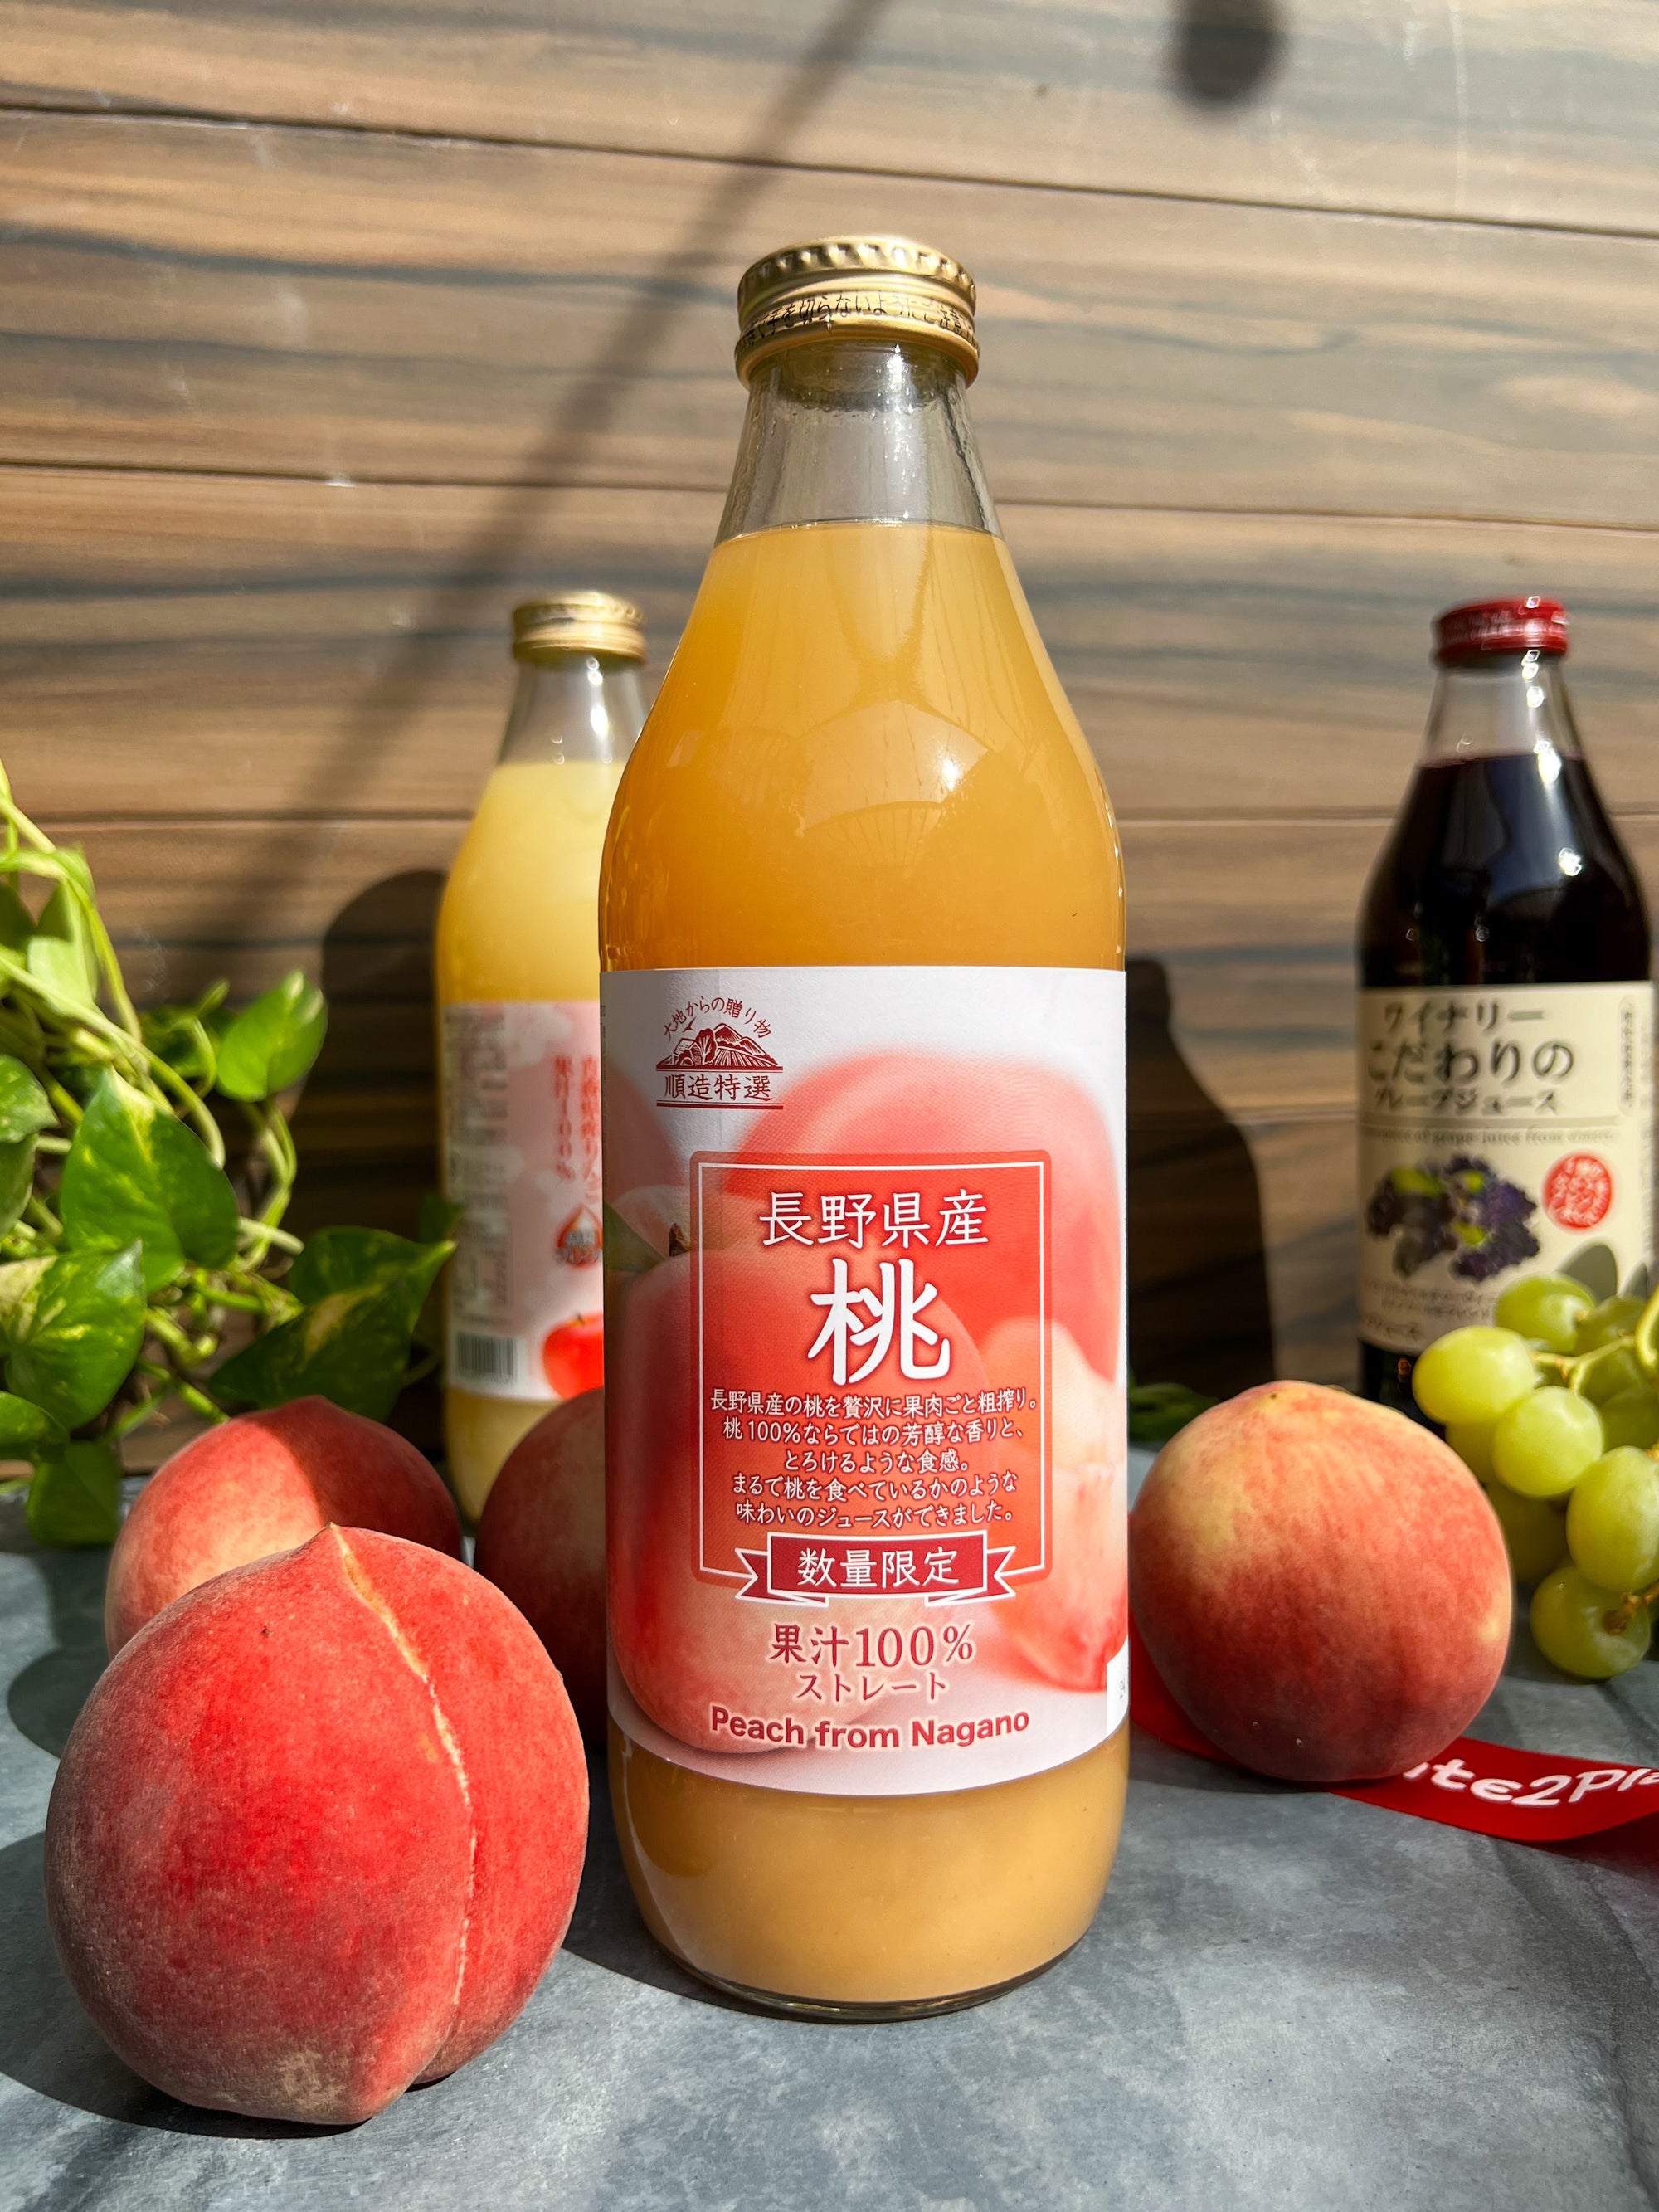 Nagano Peach Juice